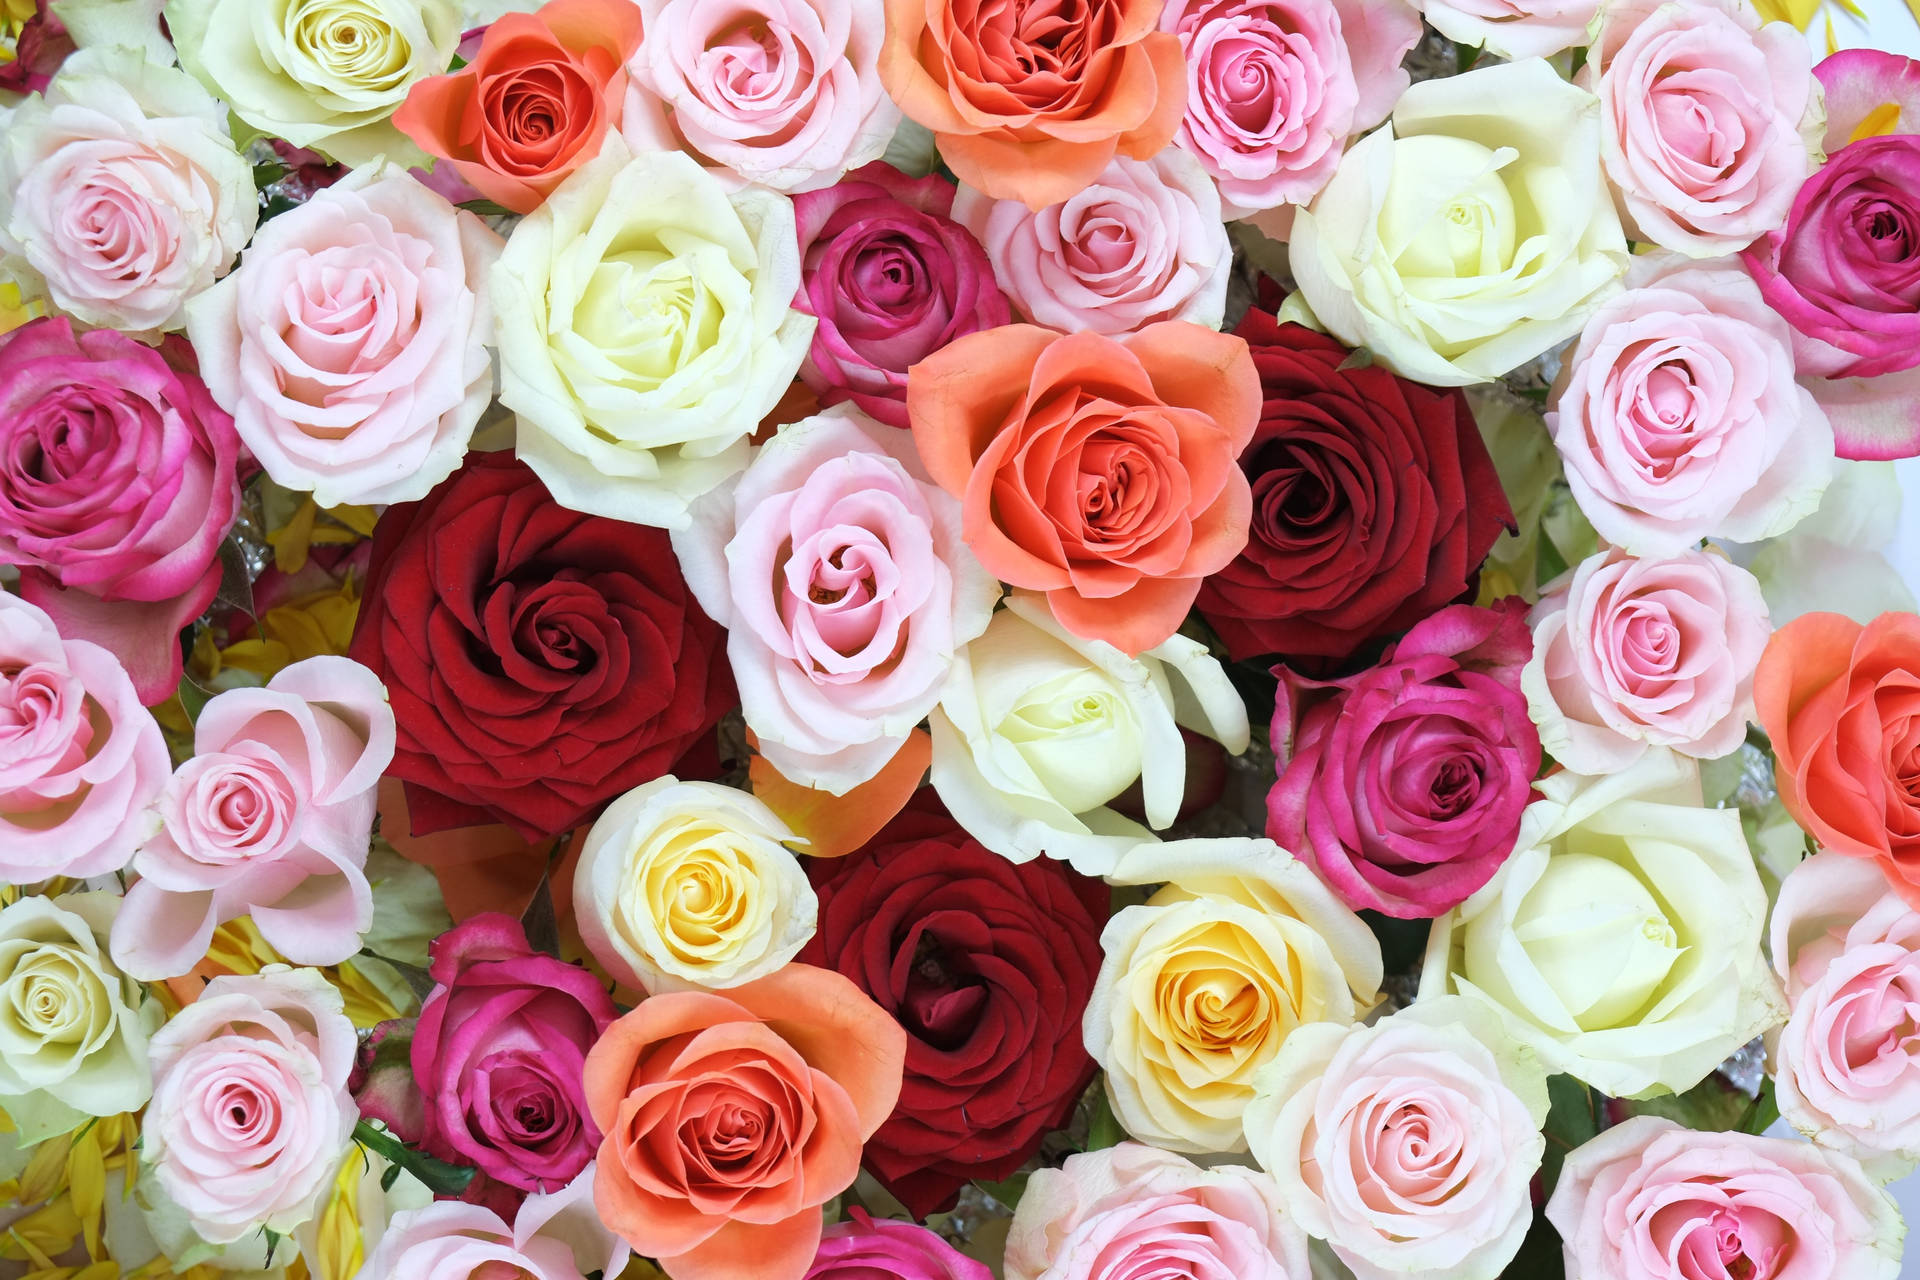 Exquisite Array of Vibrant Roses in Unique Flower Design Wallpaper